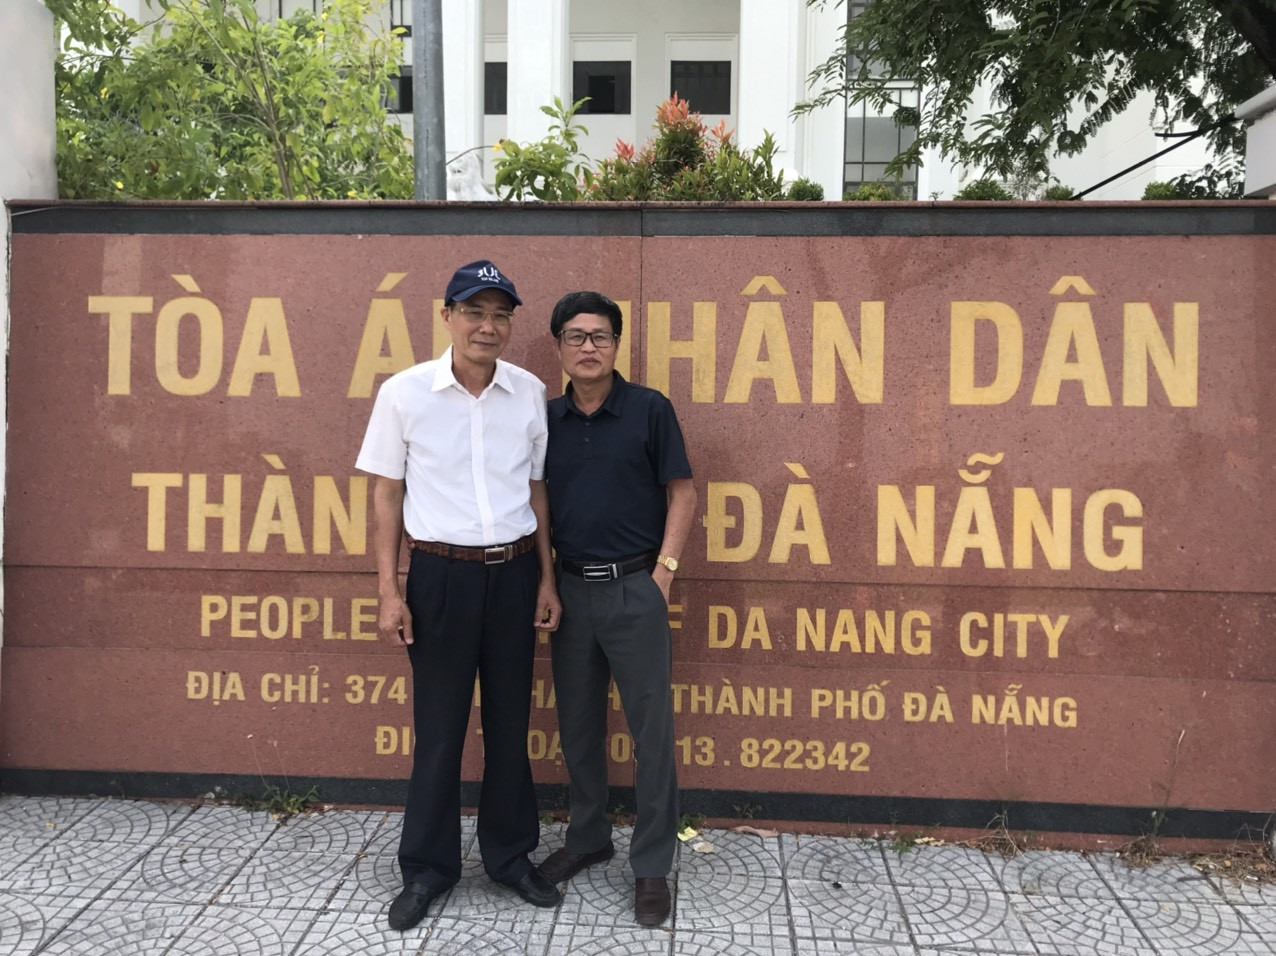 Các luật sư làm việc tại Tòa án nhân dân thành phố Đà Nẵng trong vụ án Hình sự.